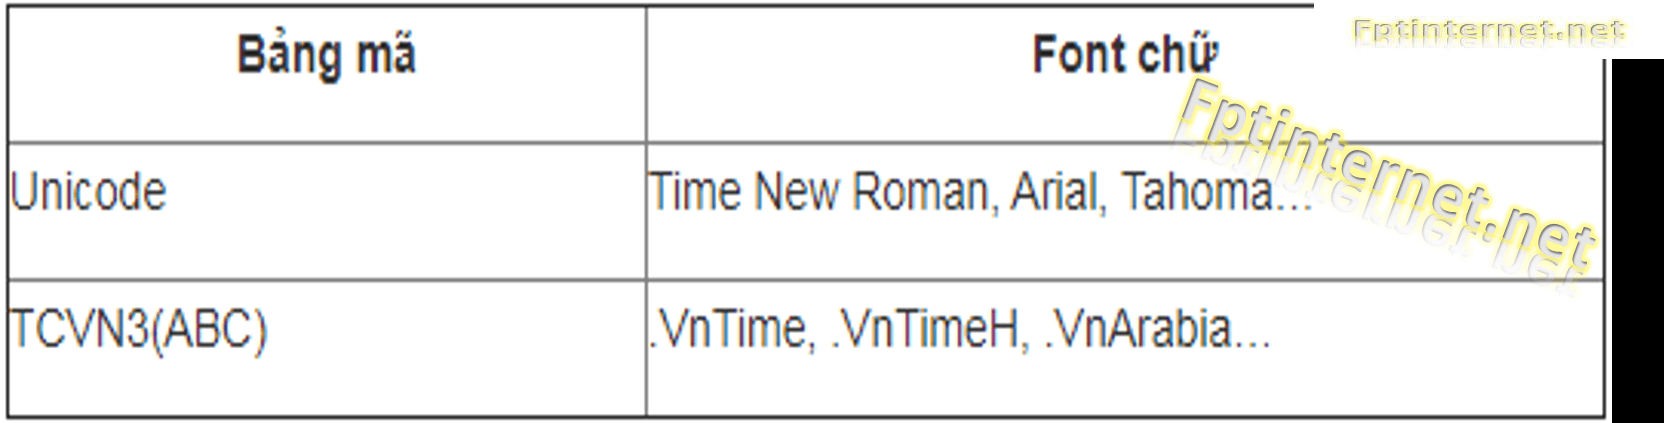 VNI-Times Time New Roman TCVN3: VNI-Times Time New Roman TCVN3 là một trong những font chữ phổ biến nhất tại Việt Nam. Với VNI-Times Time New Roman TCVN3, bạn có thể thấy đầy đủ các ký tự tiếng Việt theo các chuẩn Unicode và TCVN3, giúp bạn có thể truyền tải thông điệp bằng ngôn ngữ của mình một cách tốt nhất. Sử dụng VNI-Times Time New Roman TCVN3 để hiểu rõ hơn về sự đa dạng và đẹp mắt của chữ Việt.